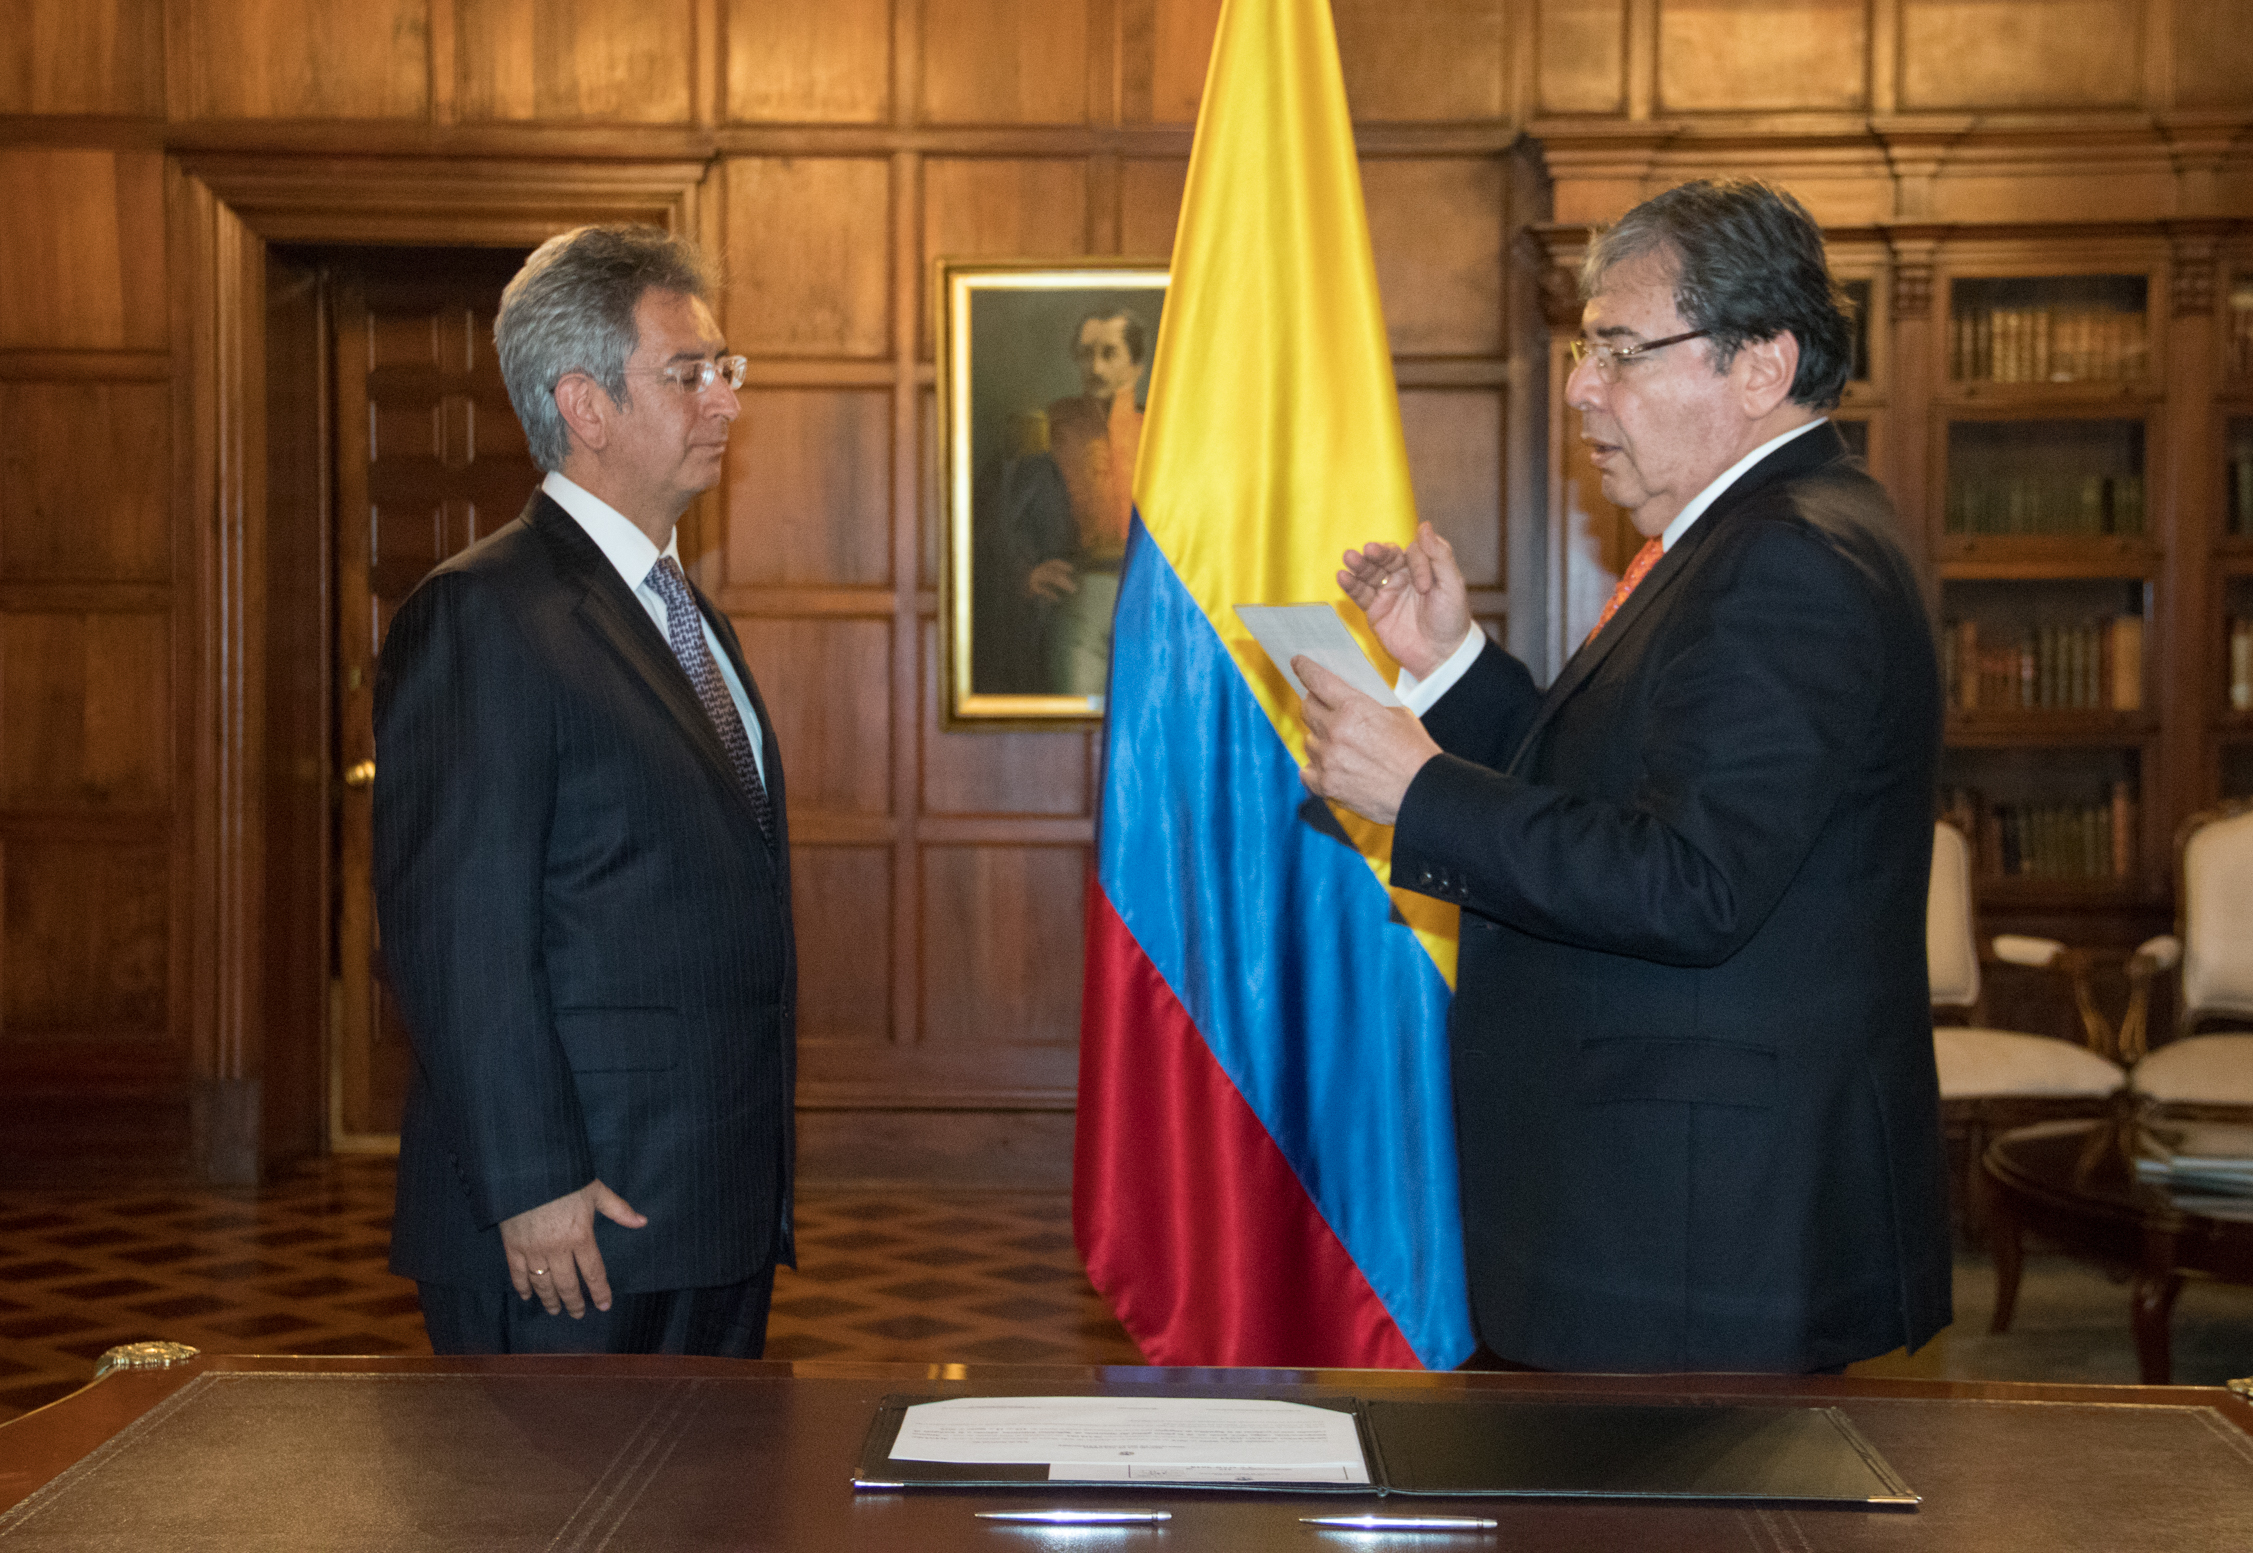 Embajador de Carrera Diplomática, Manuel Hernando Solano Sossa, asumió posesión de su cargo ante el Canciller Carlos Holmes Trujillo como nuevo Embajador de Colombia en Singapur